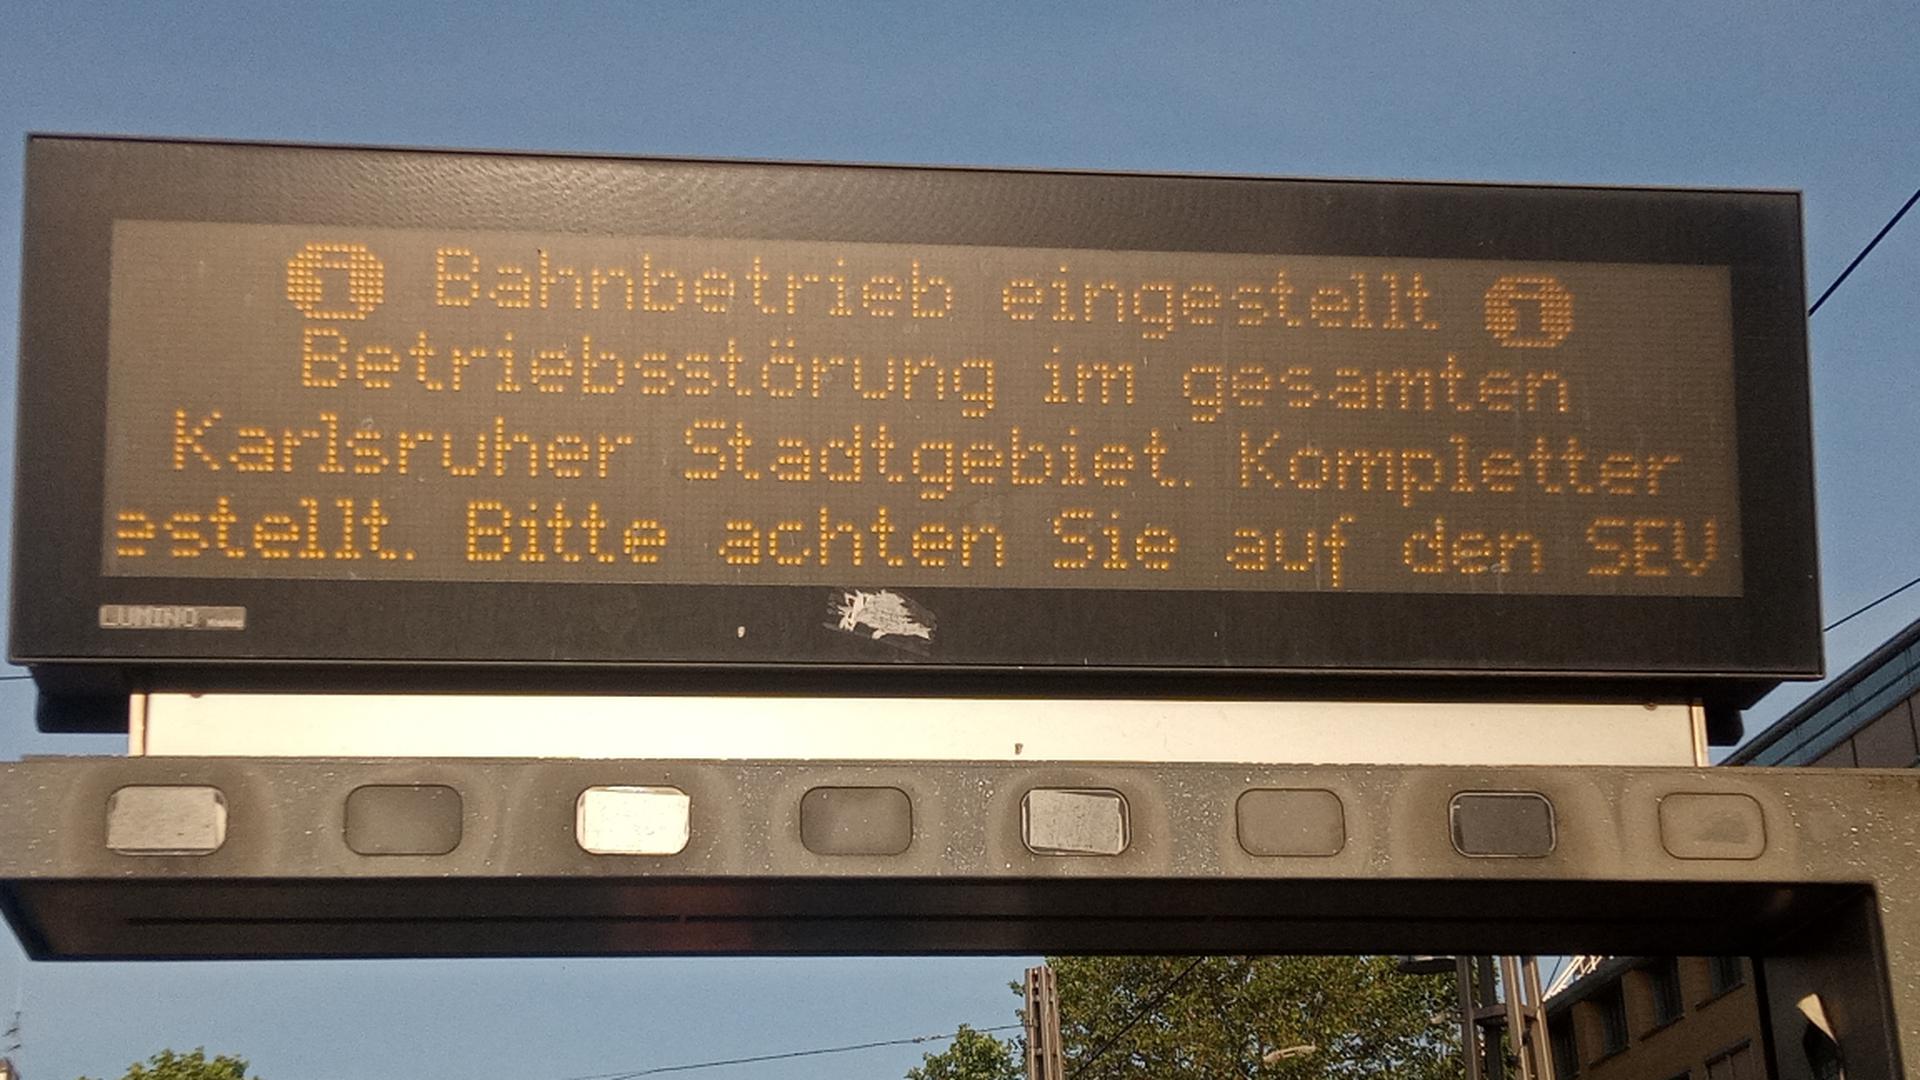 Bahnverkehr in Karlsruhe wegen Hitzeschäden eingestellt – viele Strecken am Mittwoch gesperrt